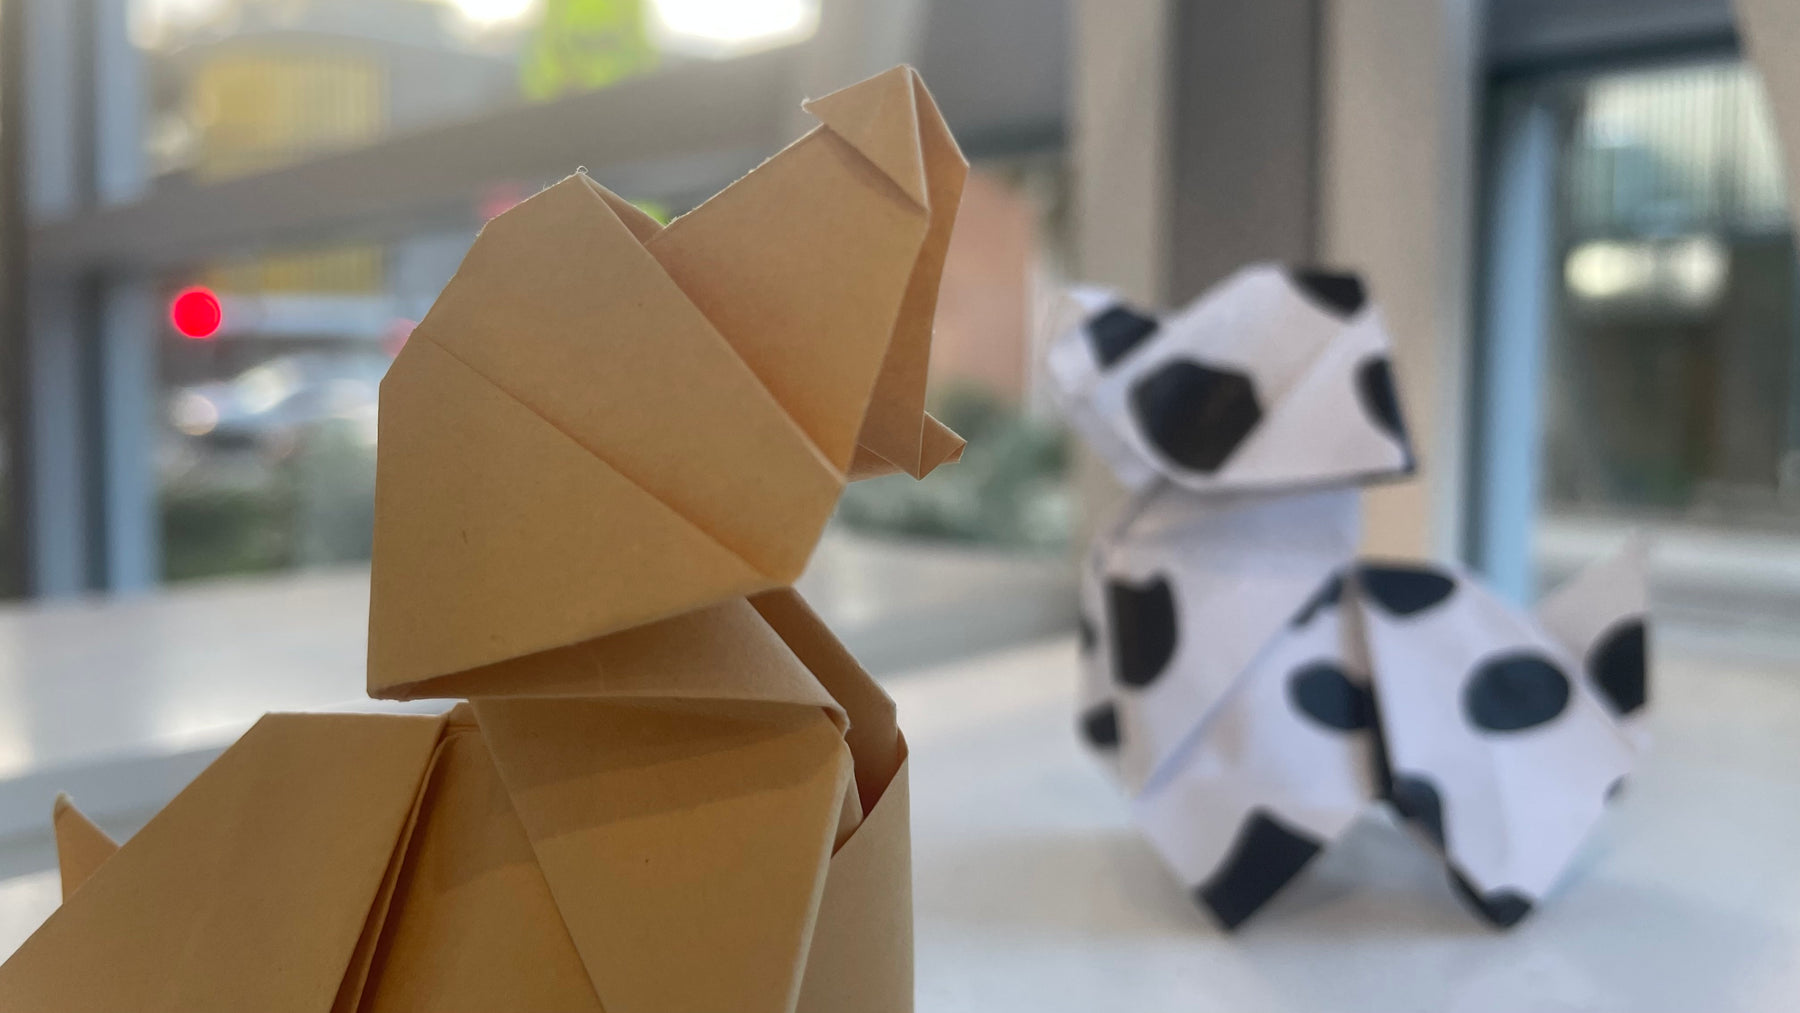 Dog Origami